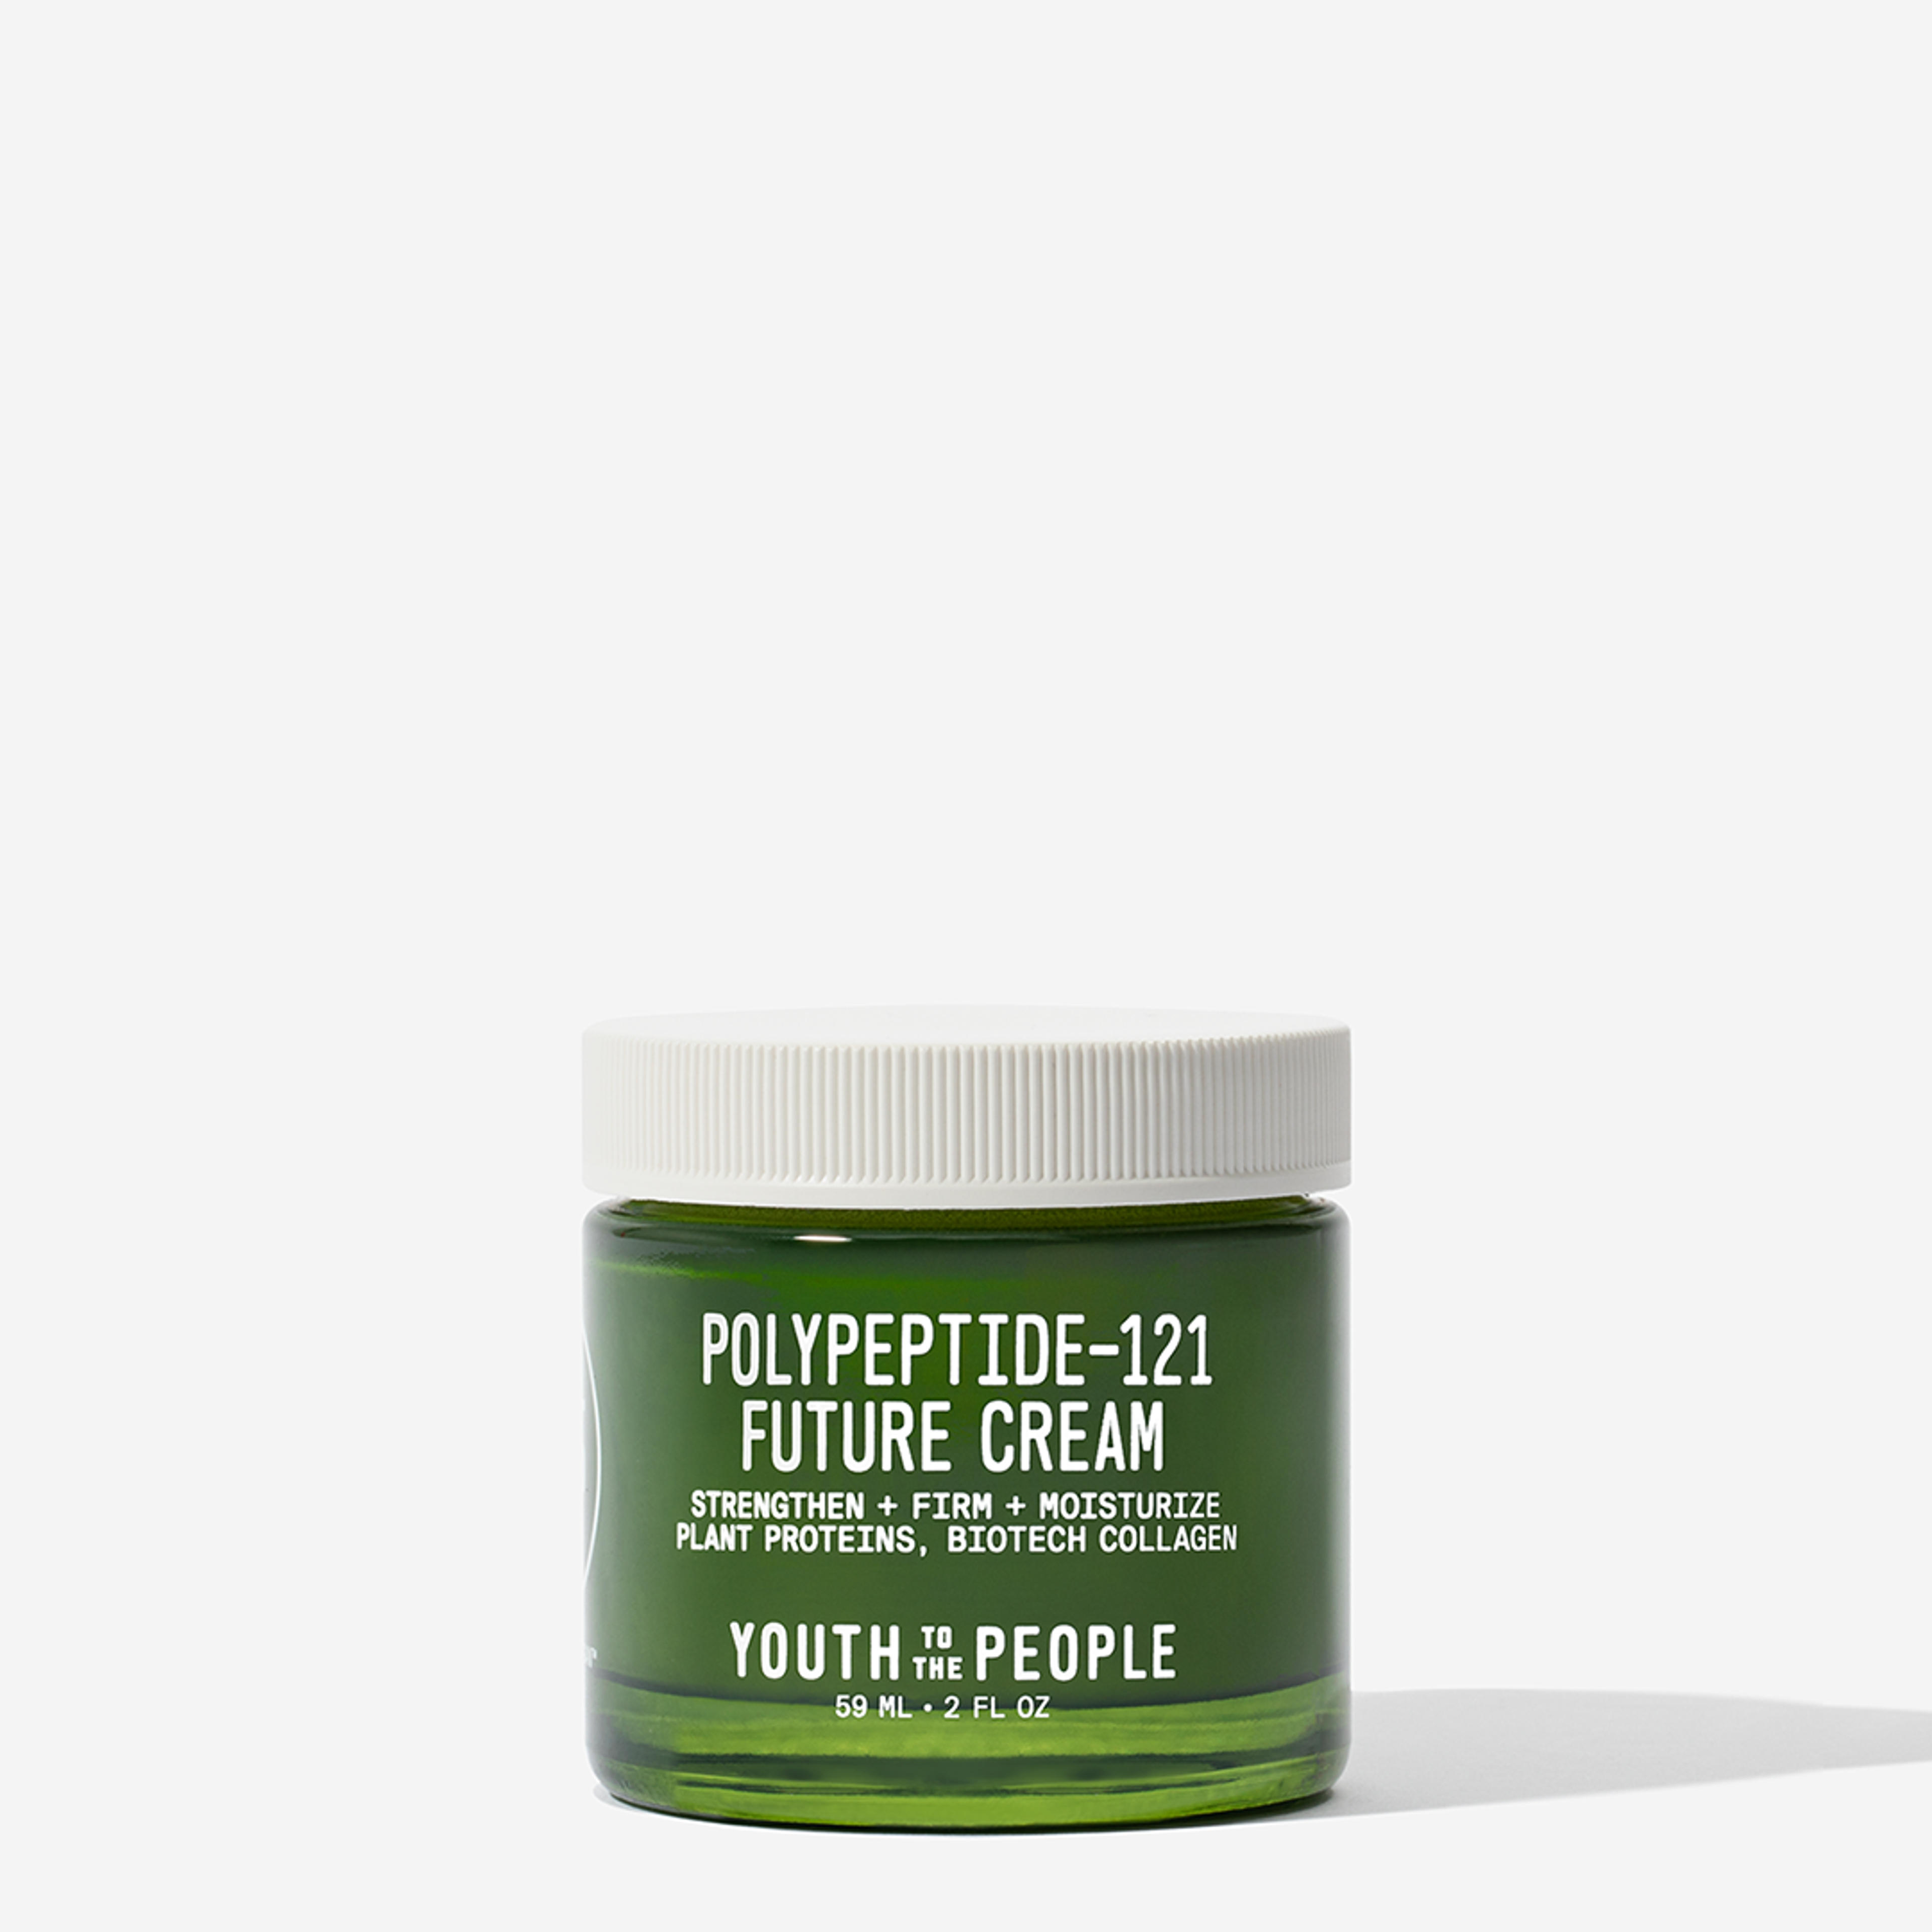 Polypeptide-121 Future Moisture Cream